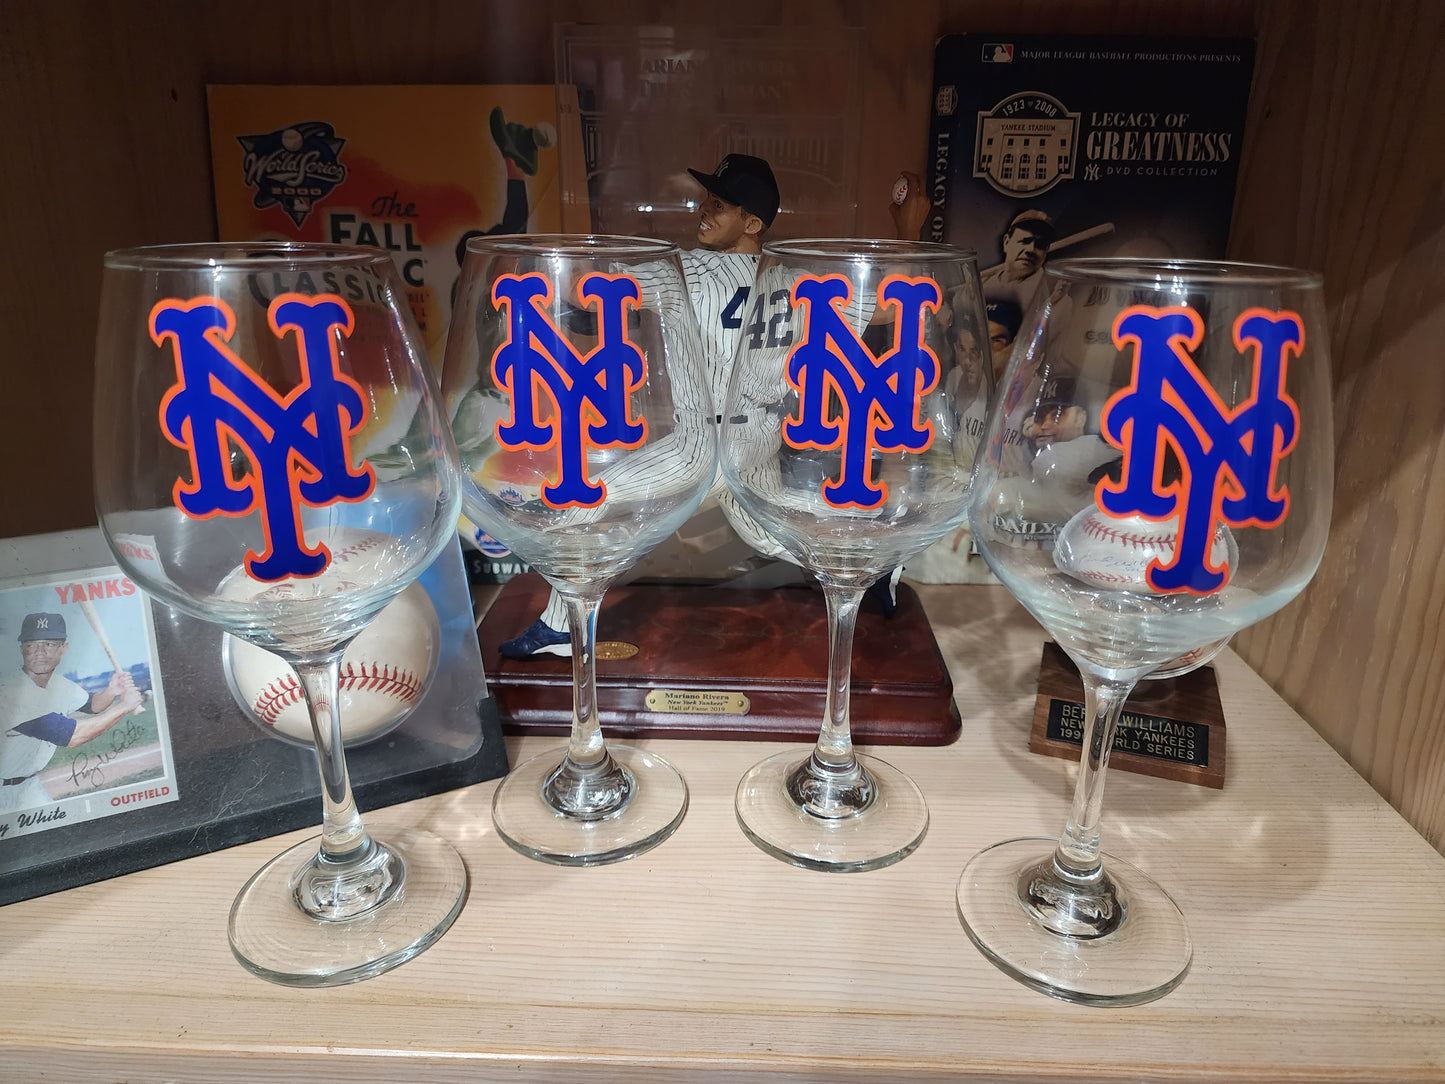 Yankees  vs. Mets wine glasses